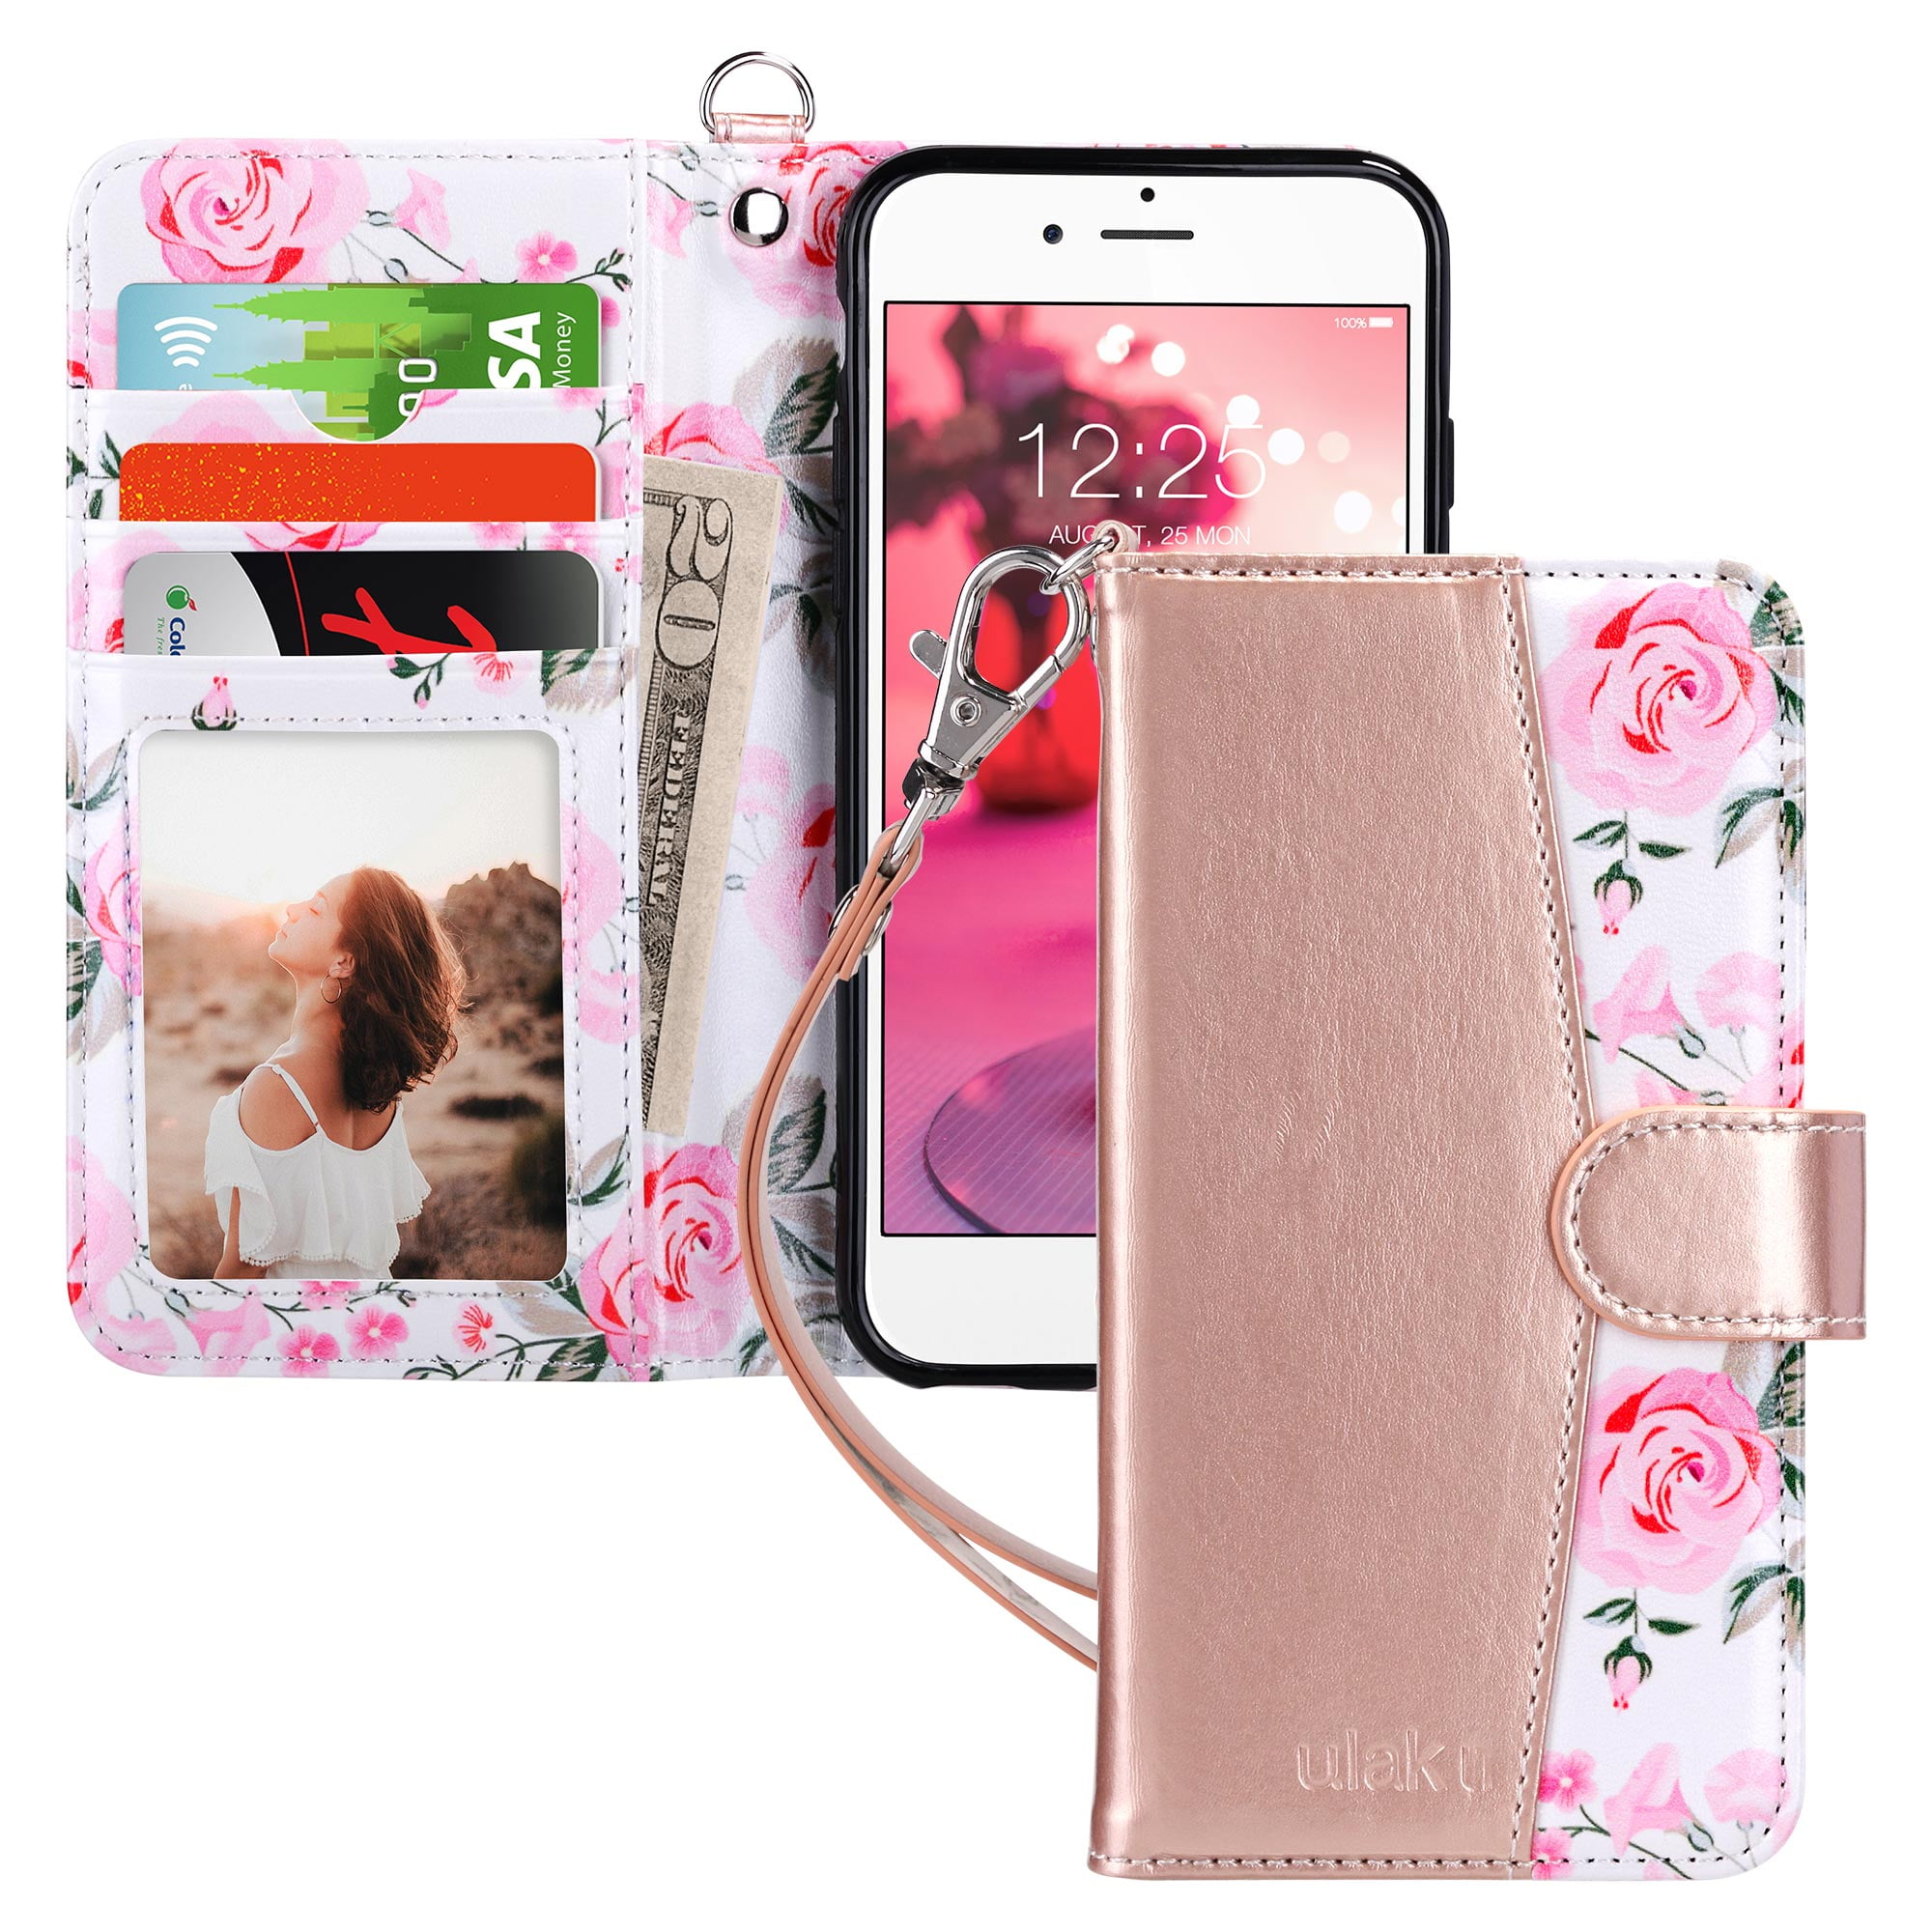 Ulak Iphone 6 Caseiphone 6s Wallet Case For Girls Women Kickstand